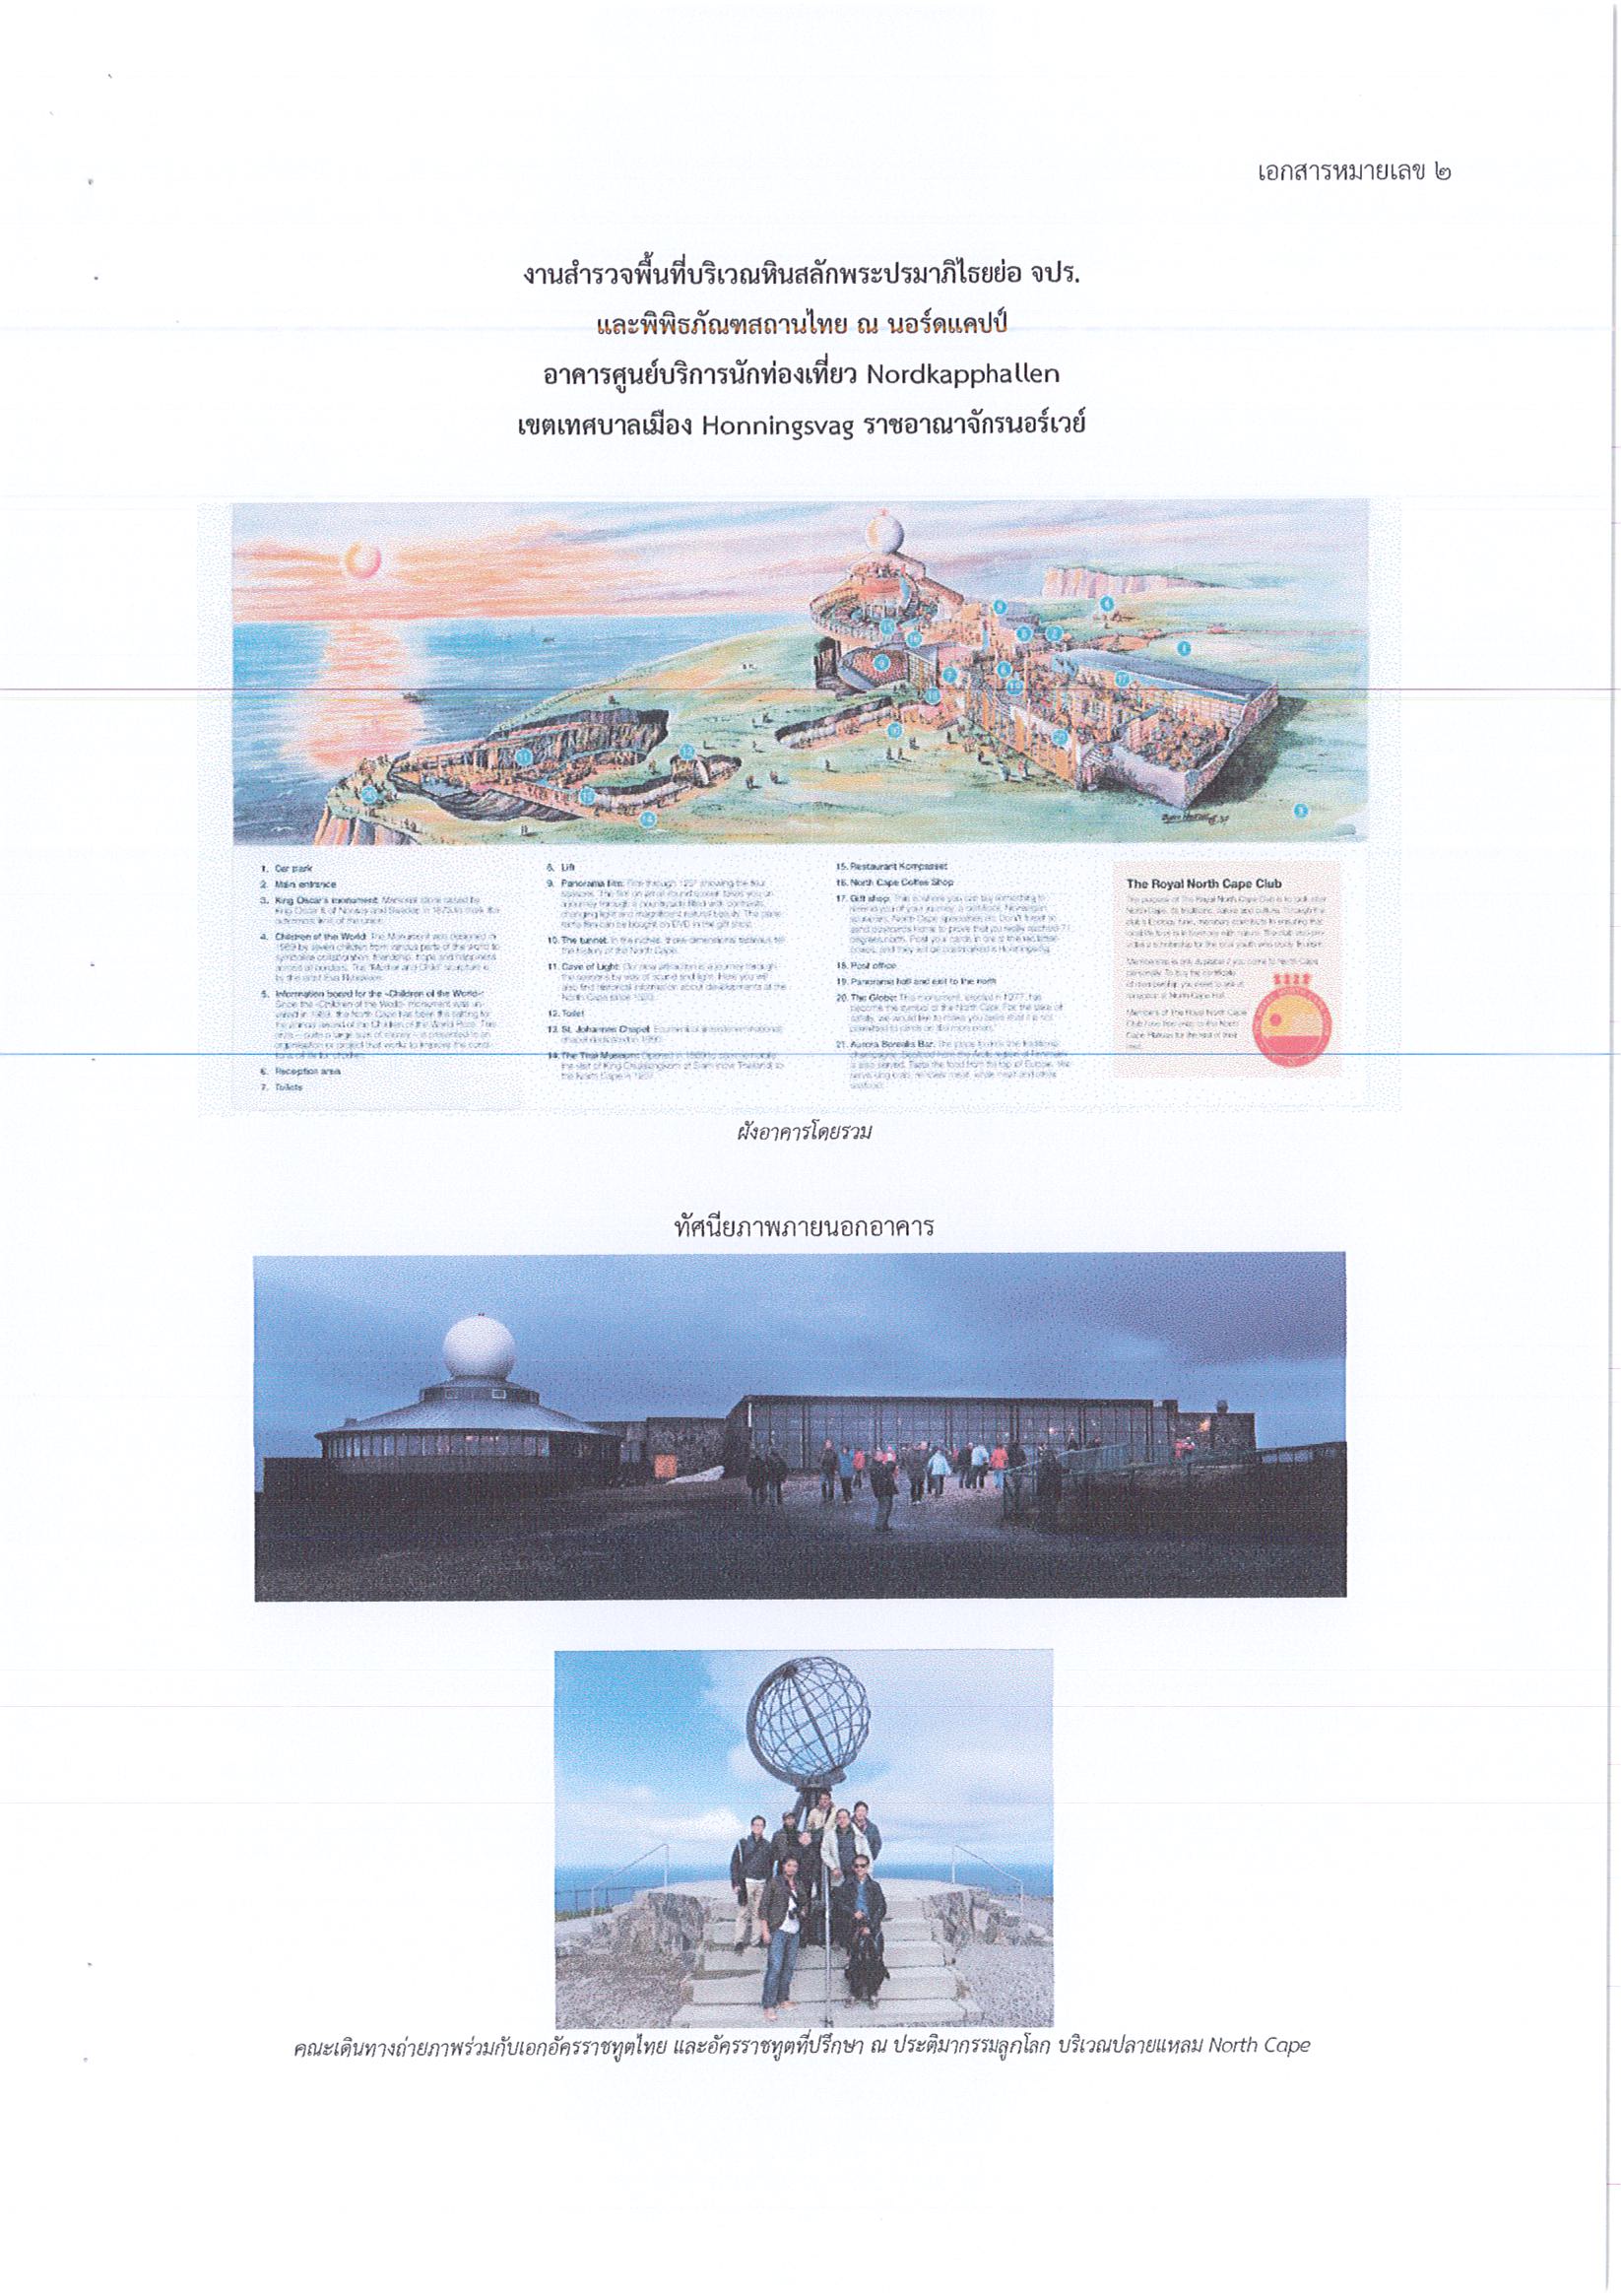 รายงานการเดินทางไปราชการ ณ ราชอาณาจักรนอร์เวย์ ระหว่างวันที่ 6 – 13 มิถุนายน 2559 โครงการสำรวจสภาพในพิพิธภัณฑสถานไทย ณ เมืองนอร์ดแคปป์ และสำรวจพระบรมราชานุสาวรีย์พระบาทสมเด็จพระจุลจอมเกล้าเจ้าอยู่หัว ณ เมืองเบรวิก